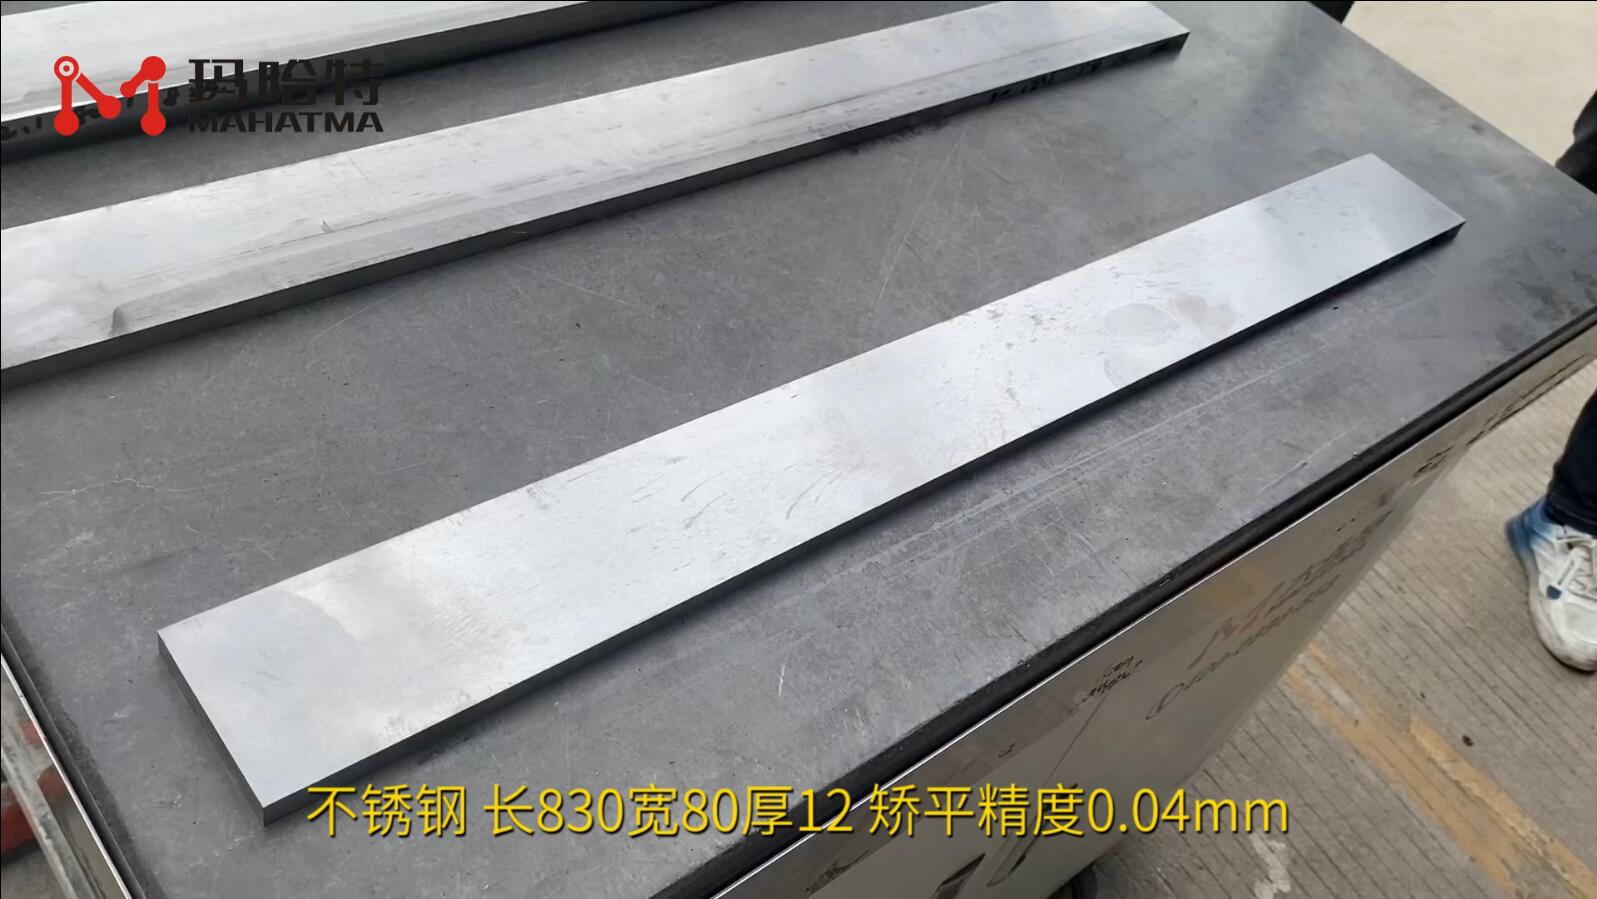 不锈钢 MHT120-1300 长方形 长830宽80厚12 矫平精度0.04mm